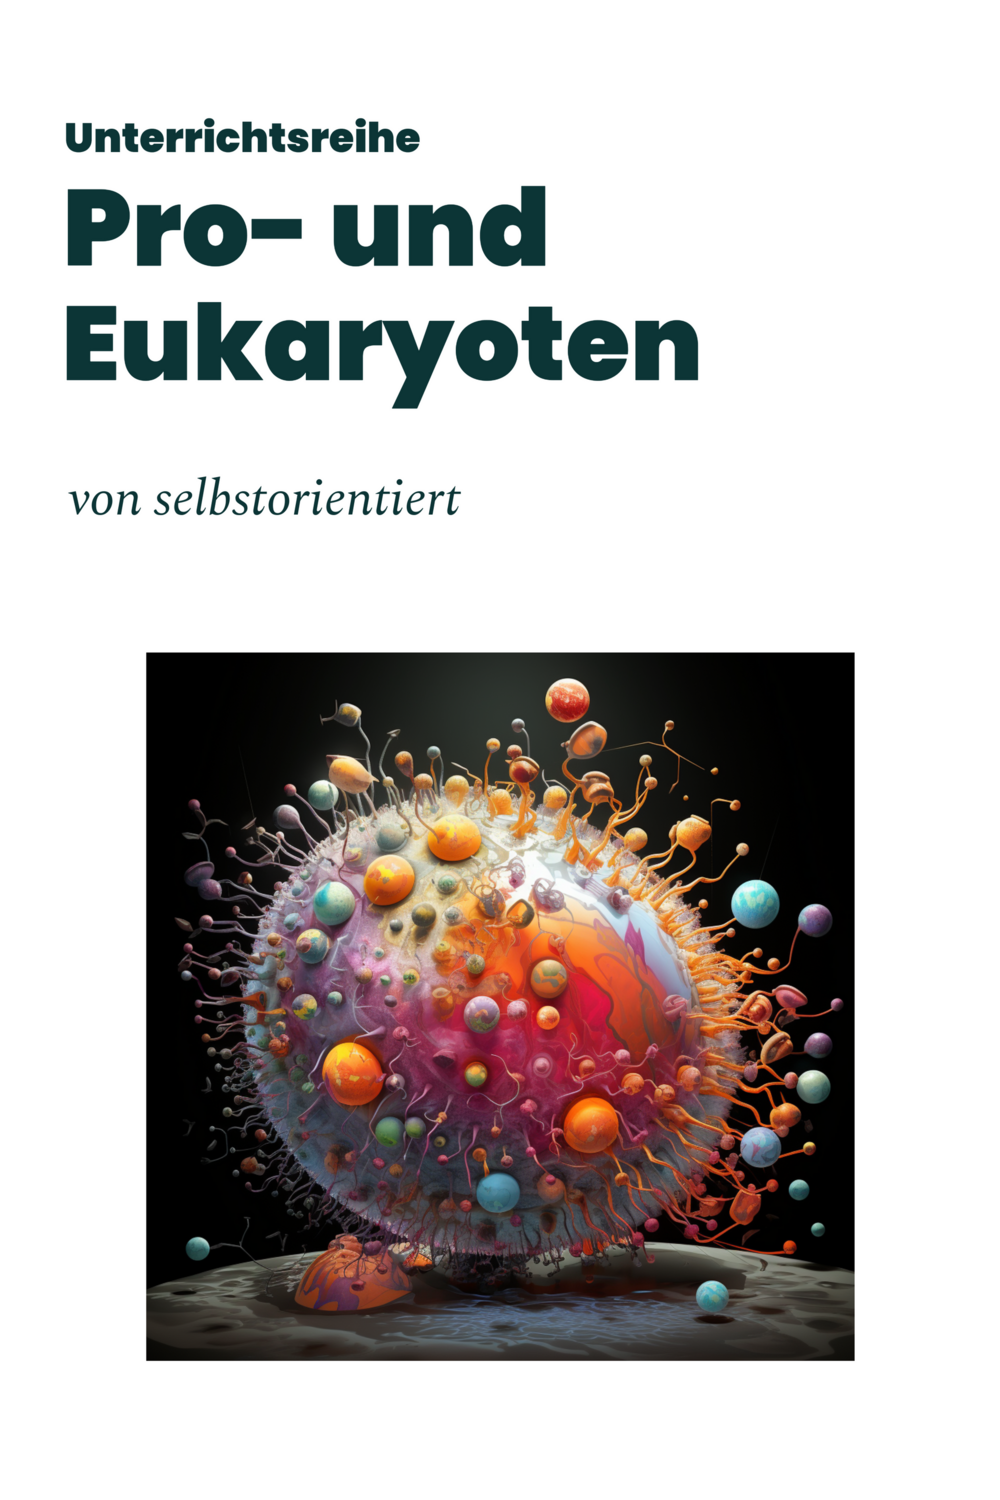 Unterrichtsmaterial: Pro- und Eukaryoten im Vergleich (Texte, Stundenentwürfe und Test)